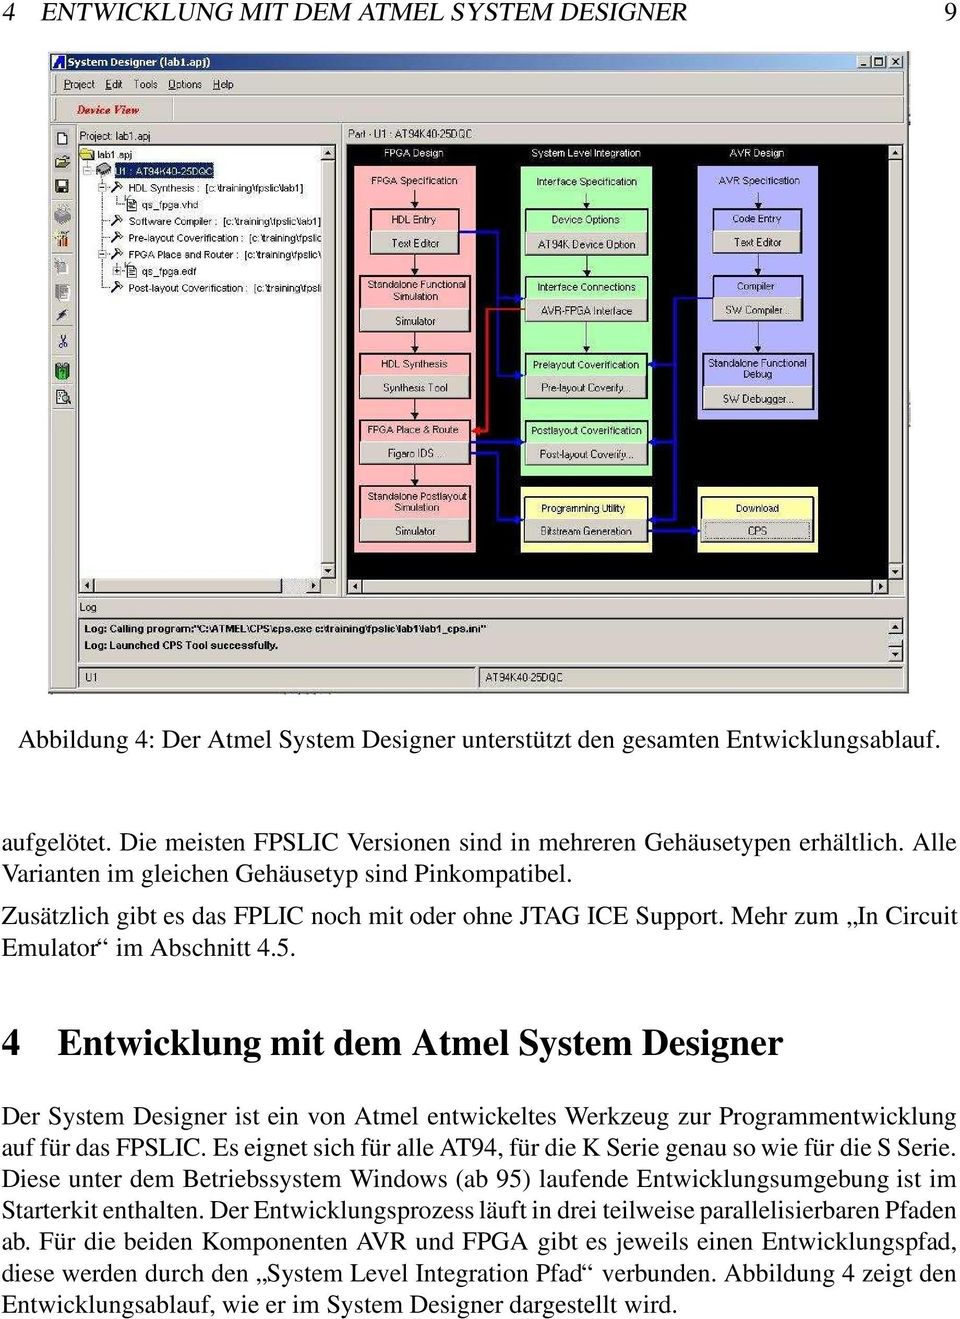 Mehr zum In Circuit Emulator im Abschnitt 4.5. 4 Entwicklung mit dem Atmel System Designer Der System Designer ist ein von Atmel entwickeltes Werkzeug zur Programmentwicklung auf für das FPSLIC.